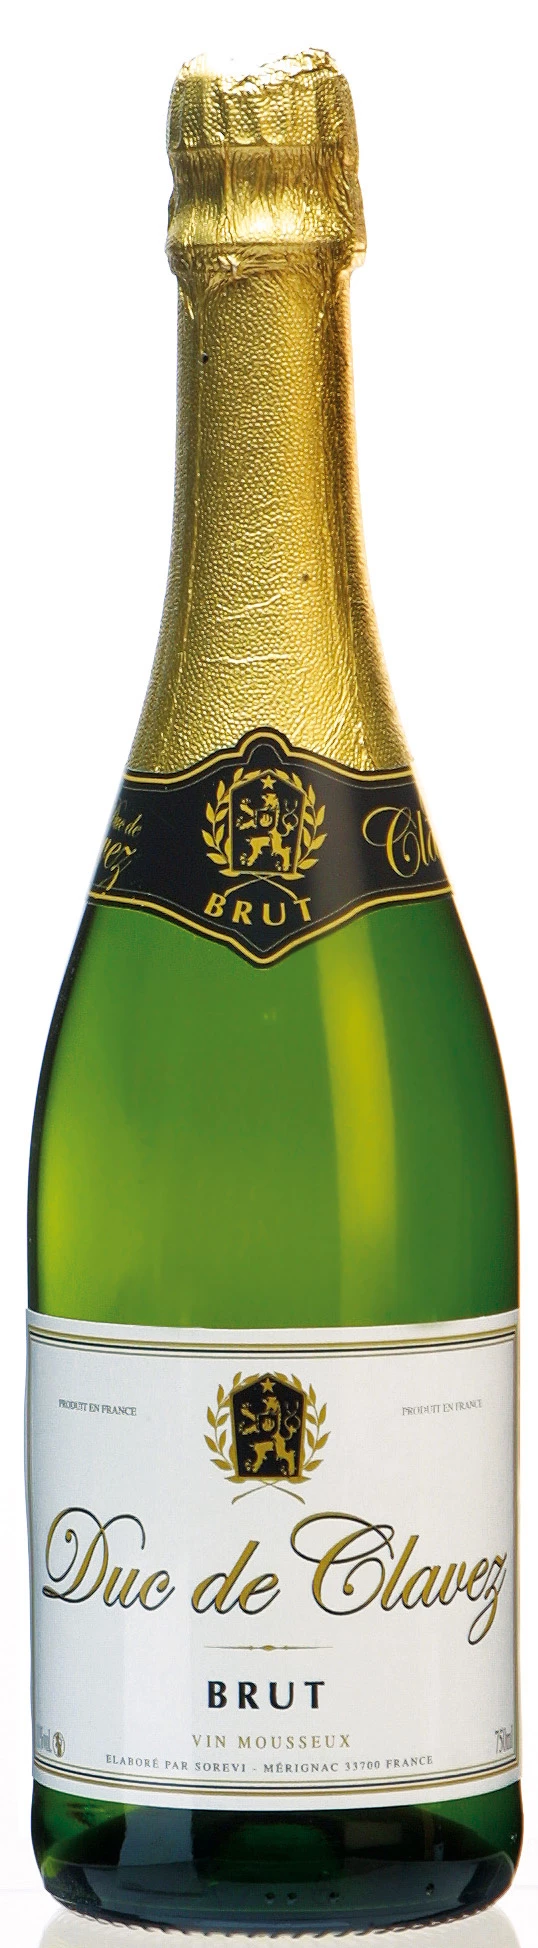 Vin Mousseux Brut 11% 75cl - DUC DE CLAVEZ